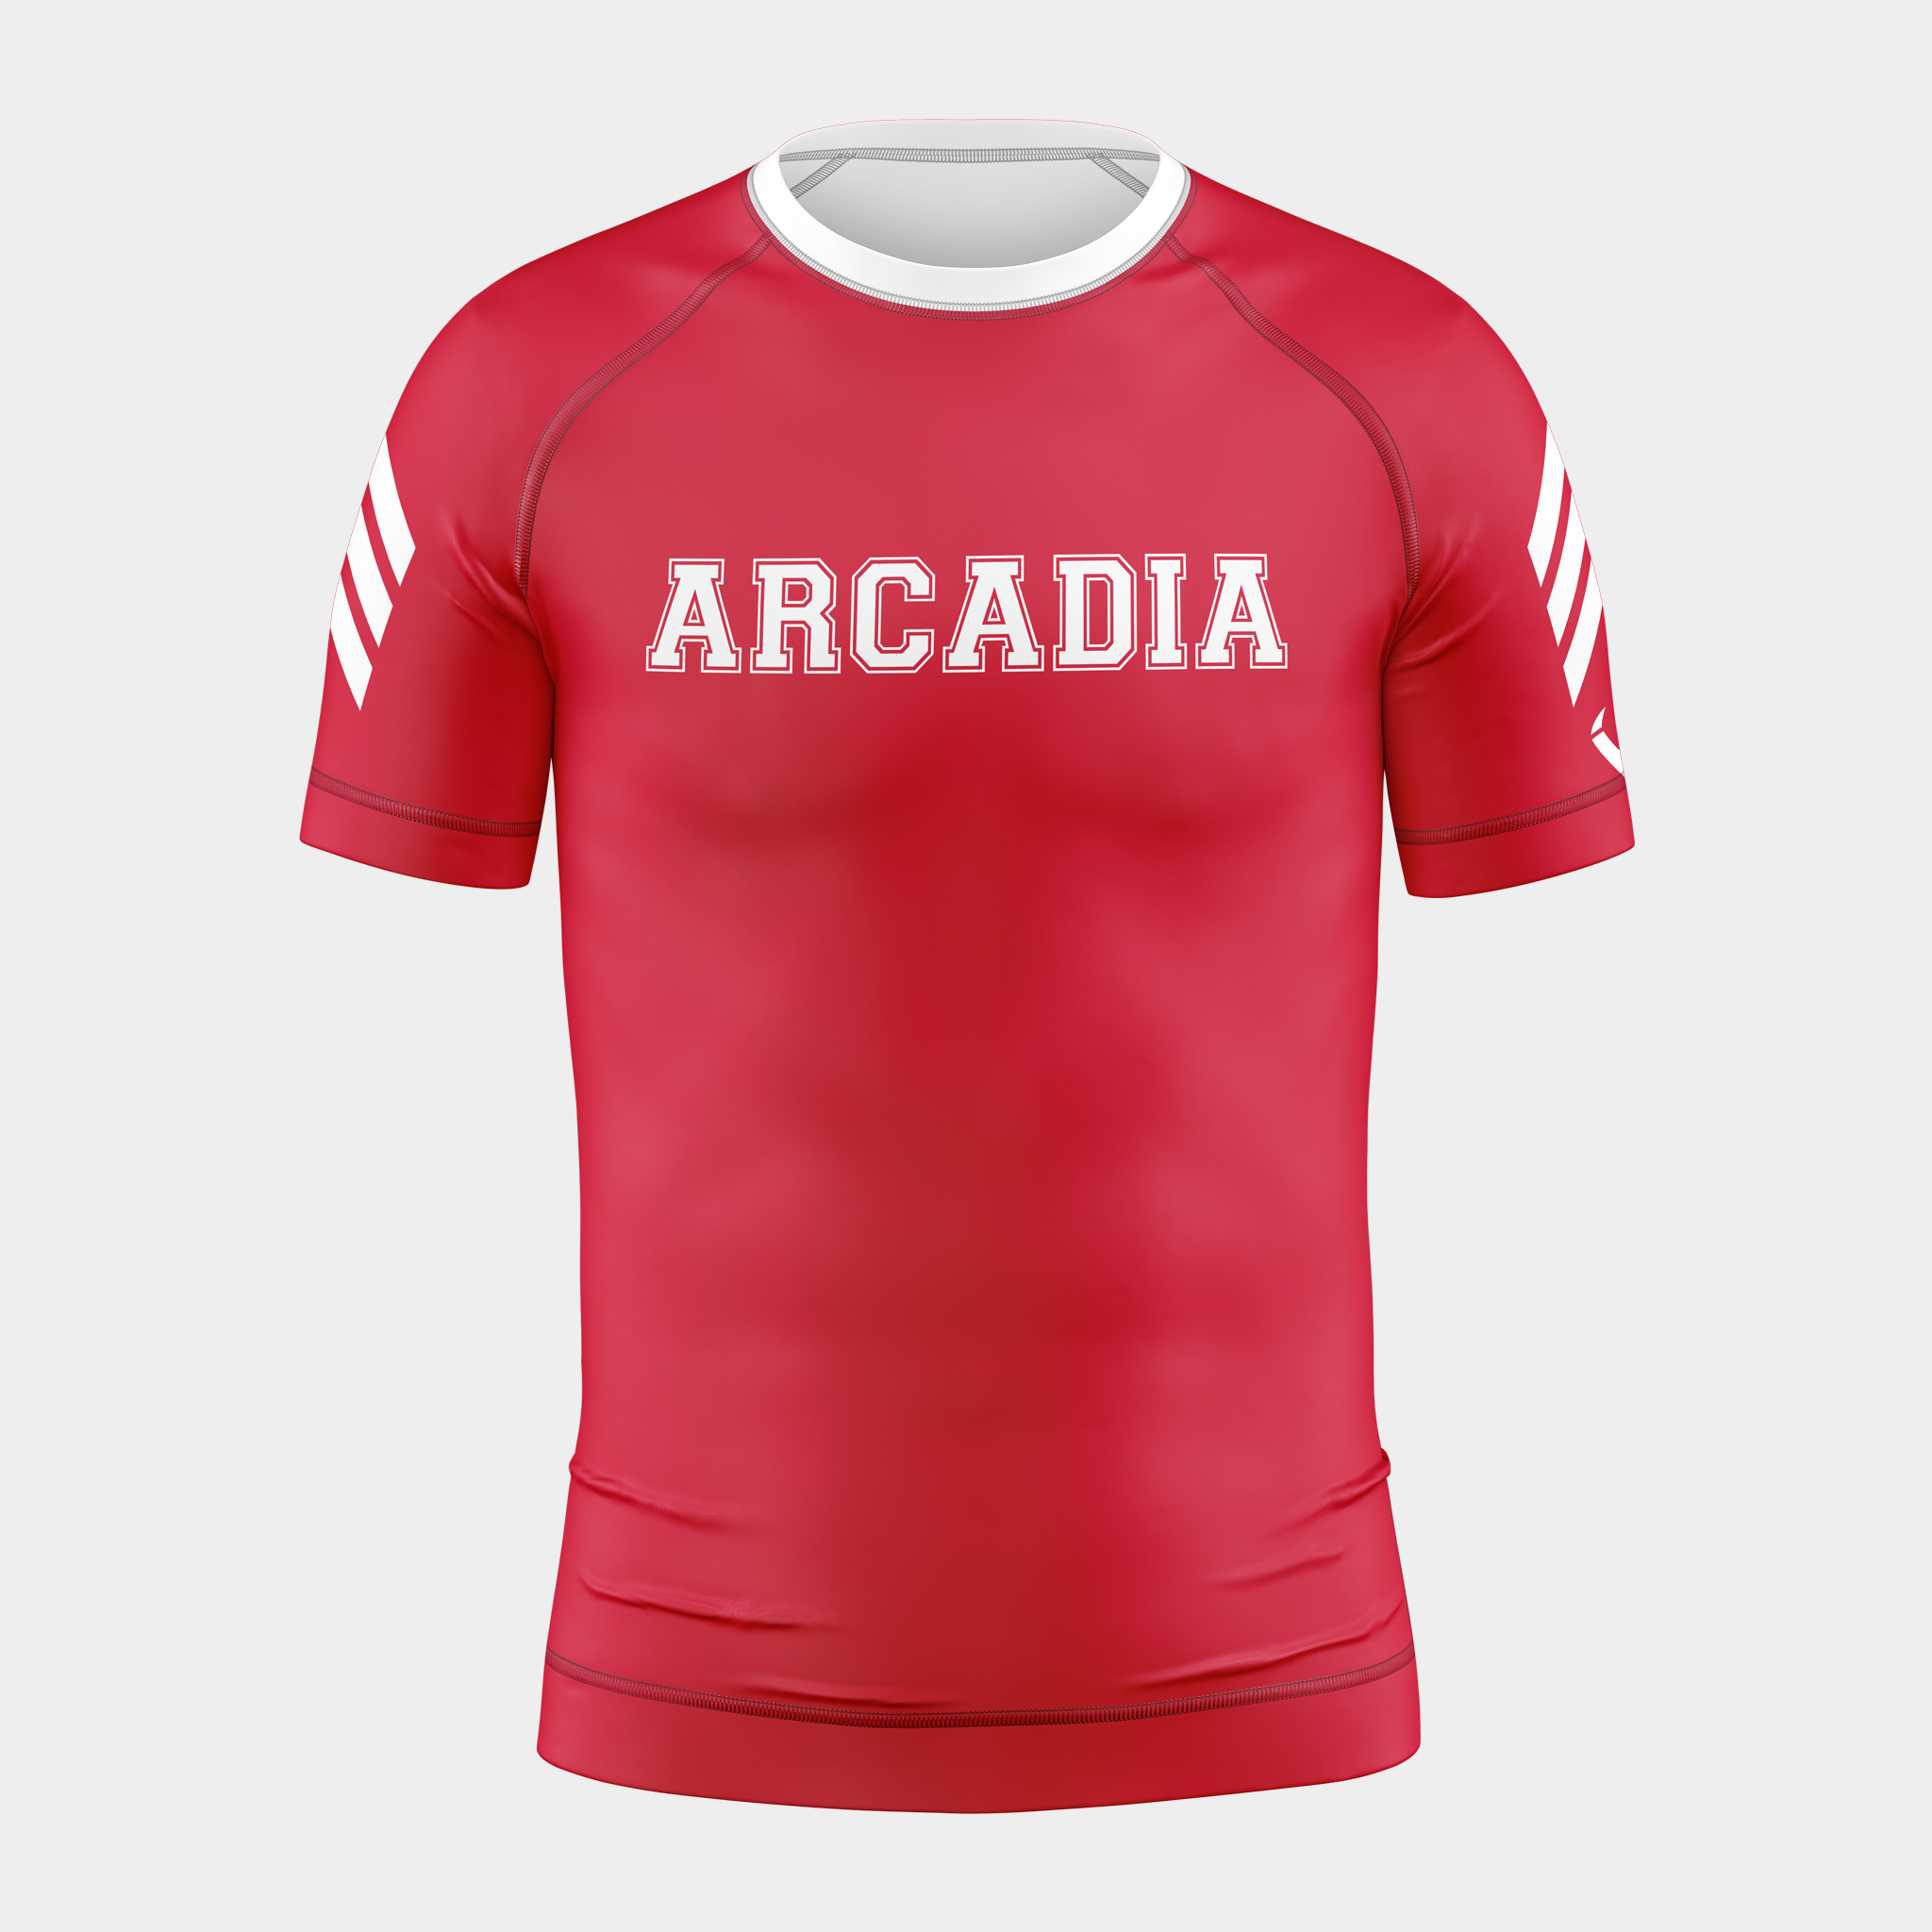 Arcadia - Compression Top